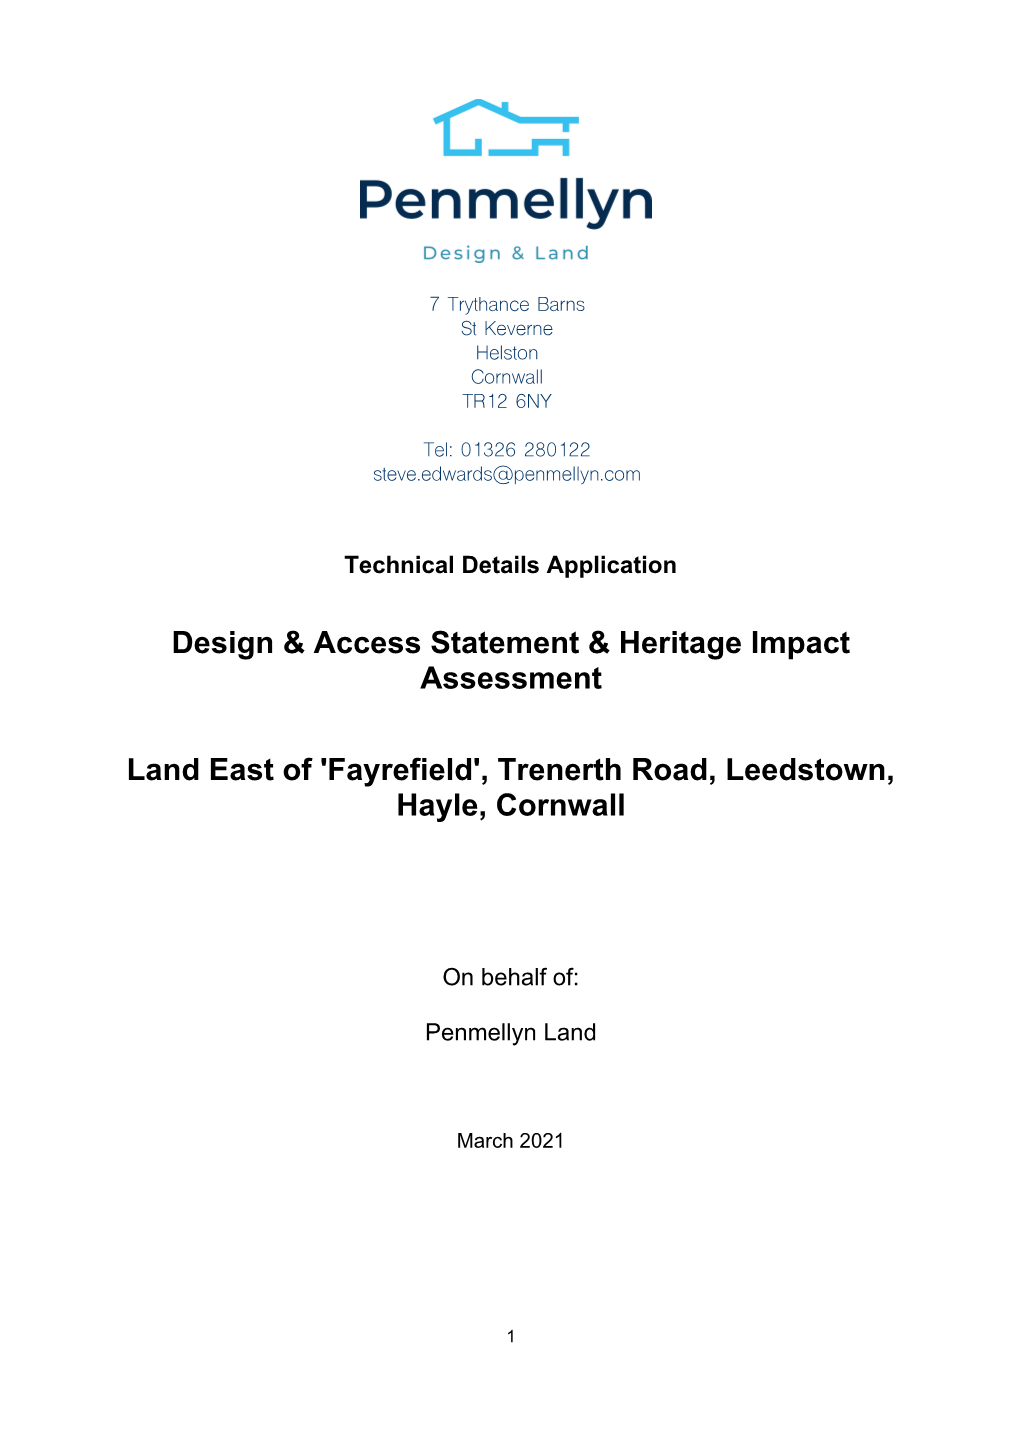 'Fayrefield', Trenerth Road, Leedstown, Hayle, Cornwall